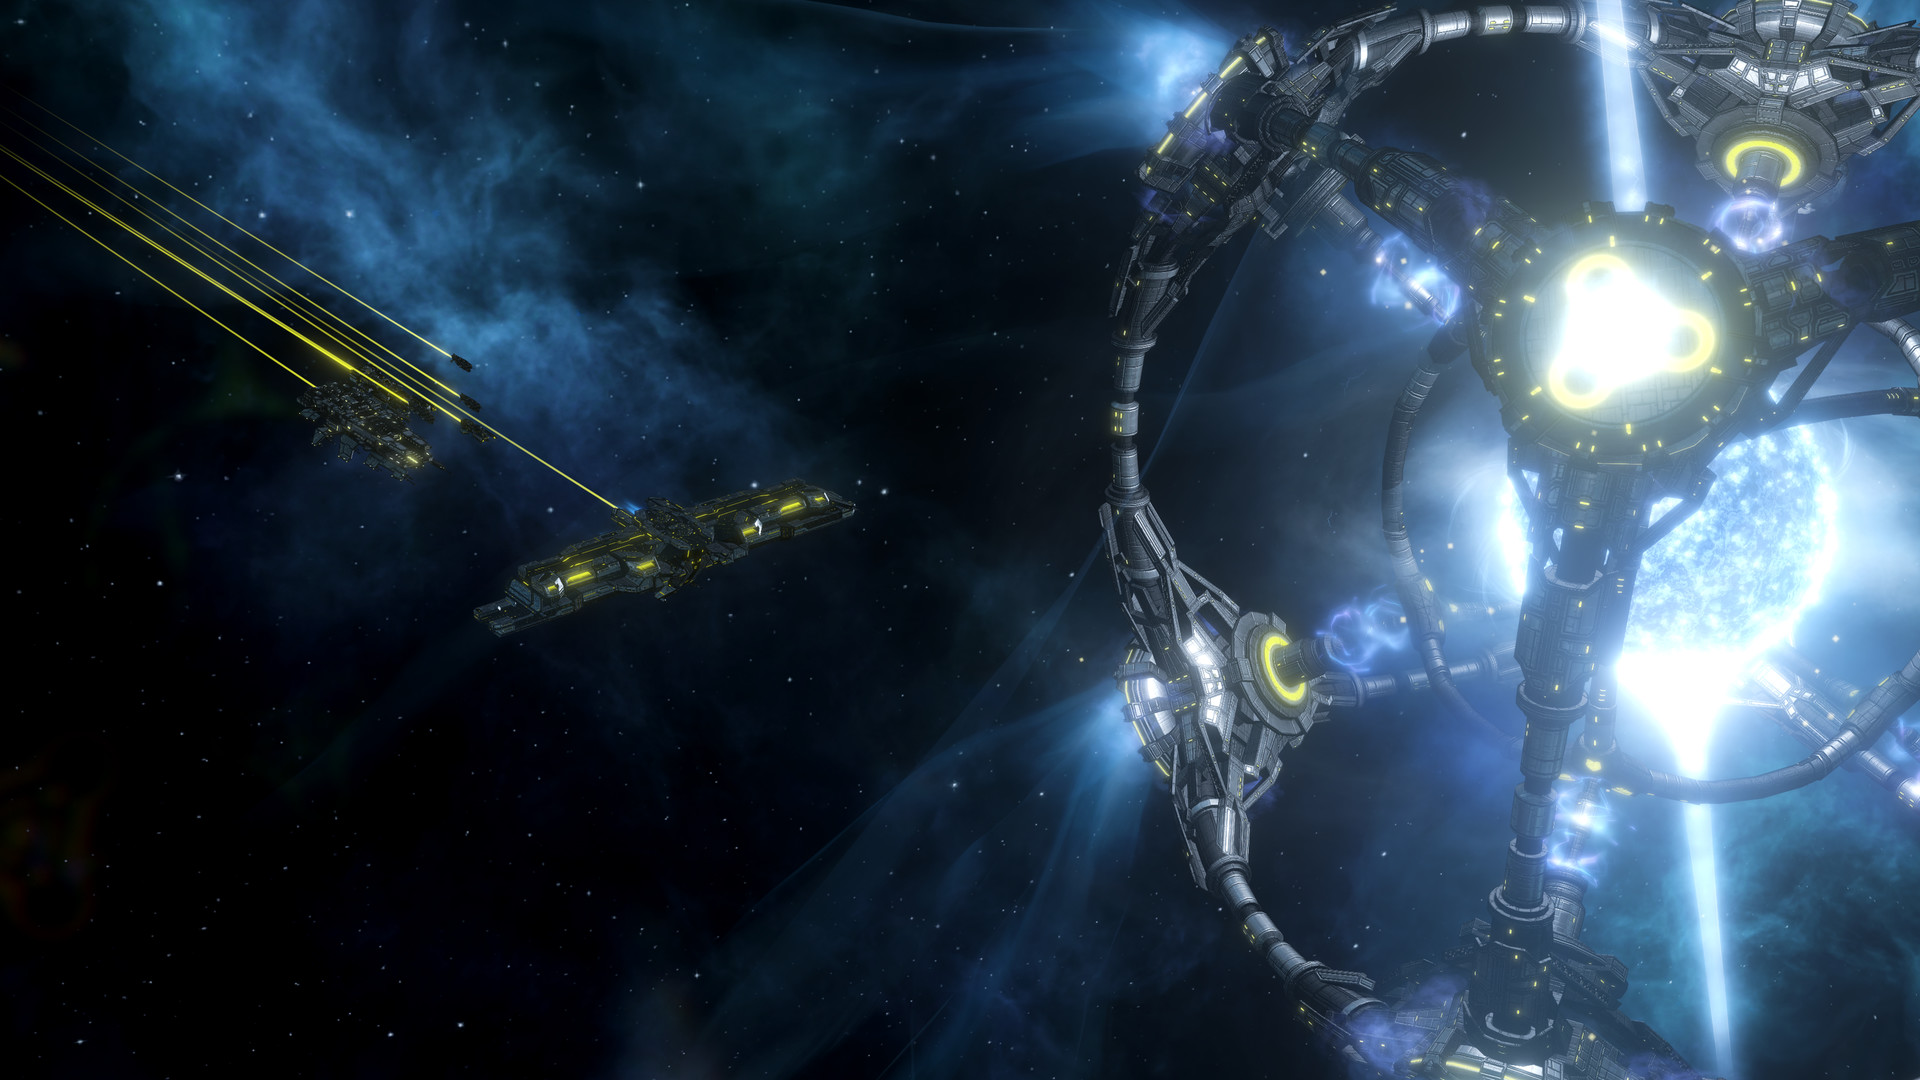 Stellaris - Overlord DLC EU V2 Steam Altergift